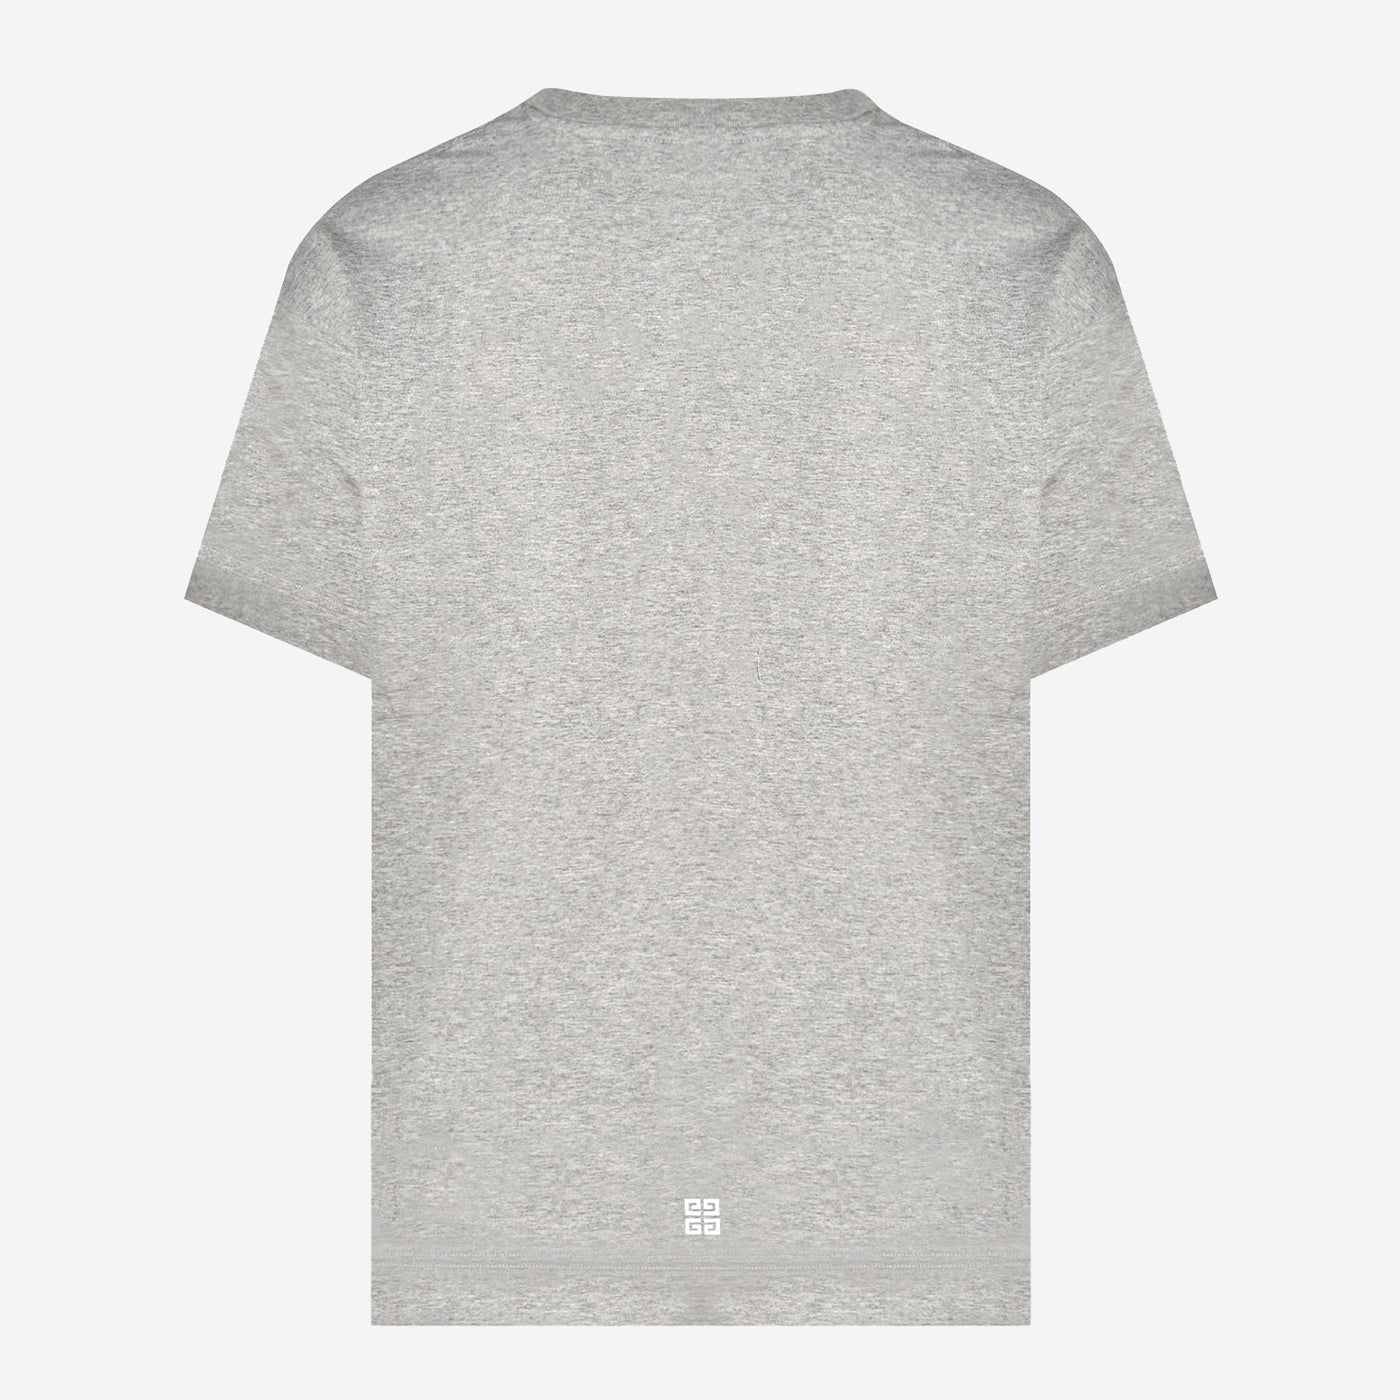 Givenchy Lightning  Logo Print T-Shirt